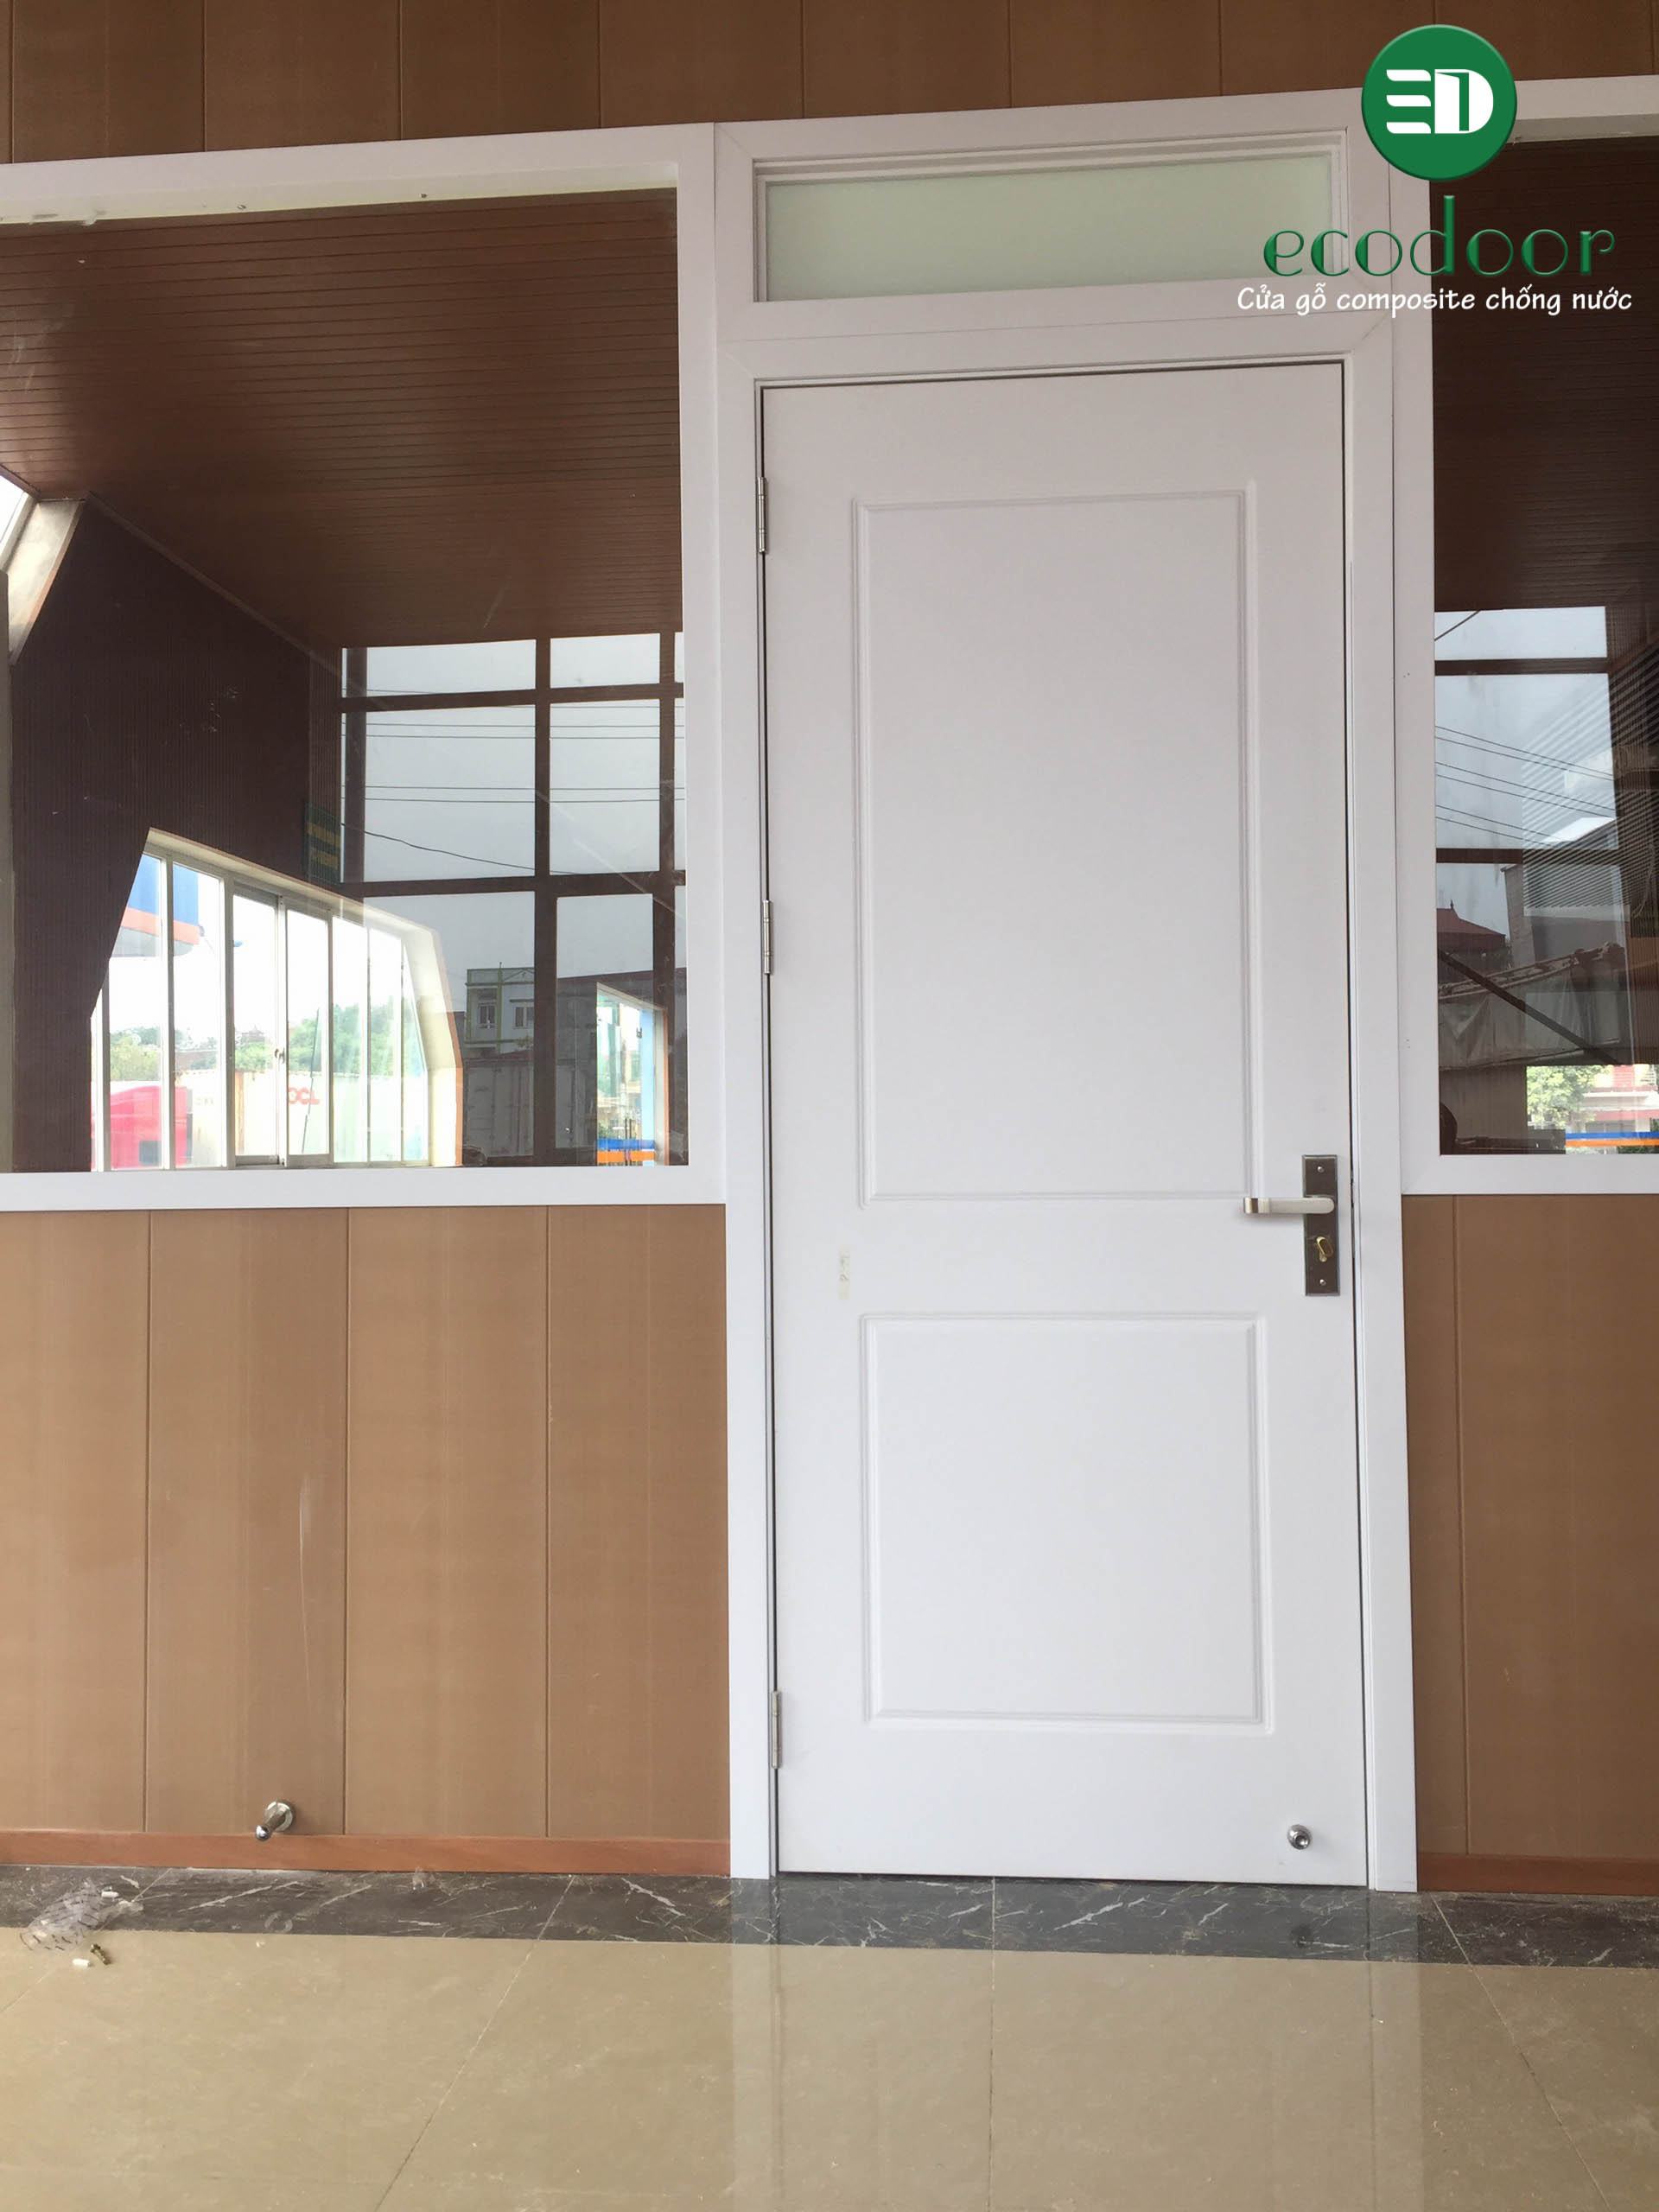 Quy trình lắp đặt cửa gỗ nhựa composite nhà vệ sinh - Ecodoor